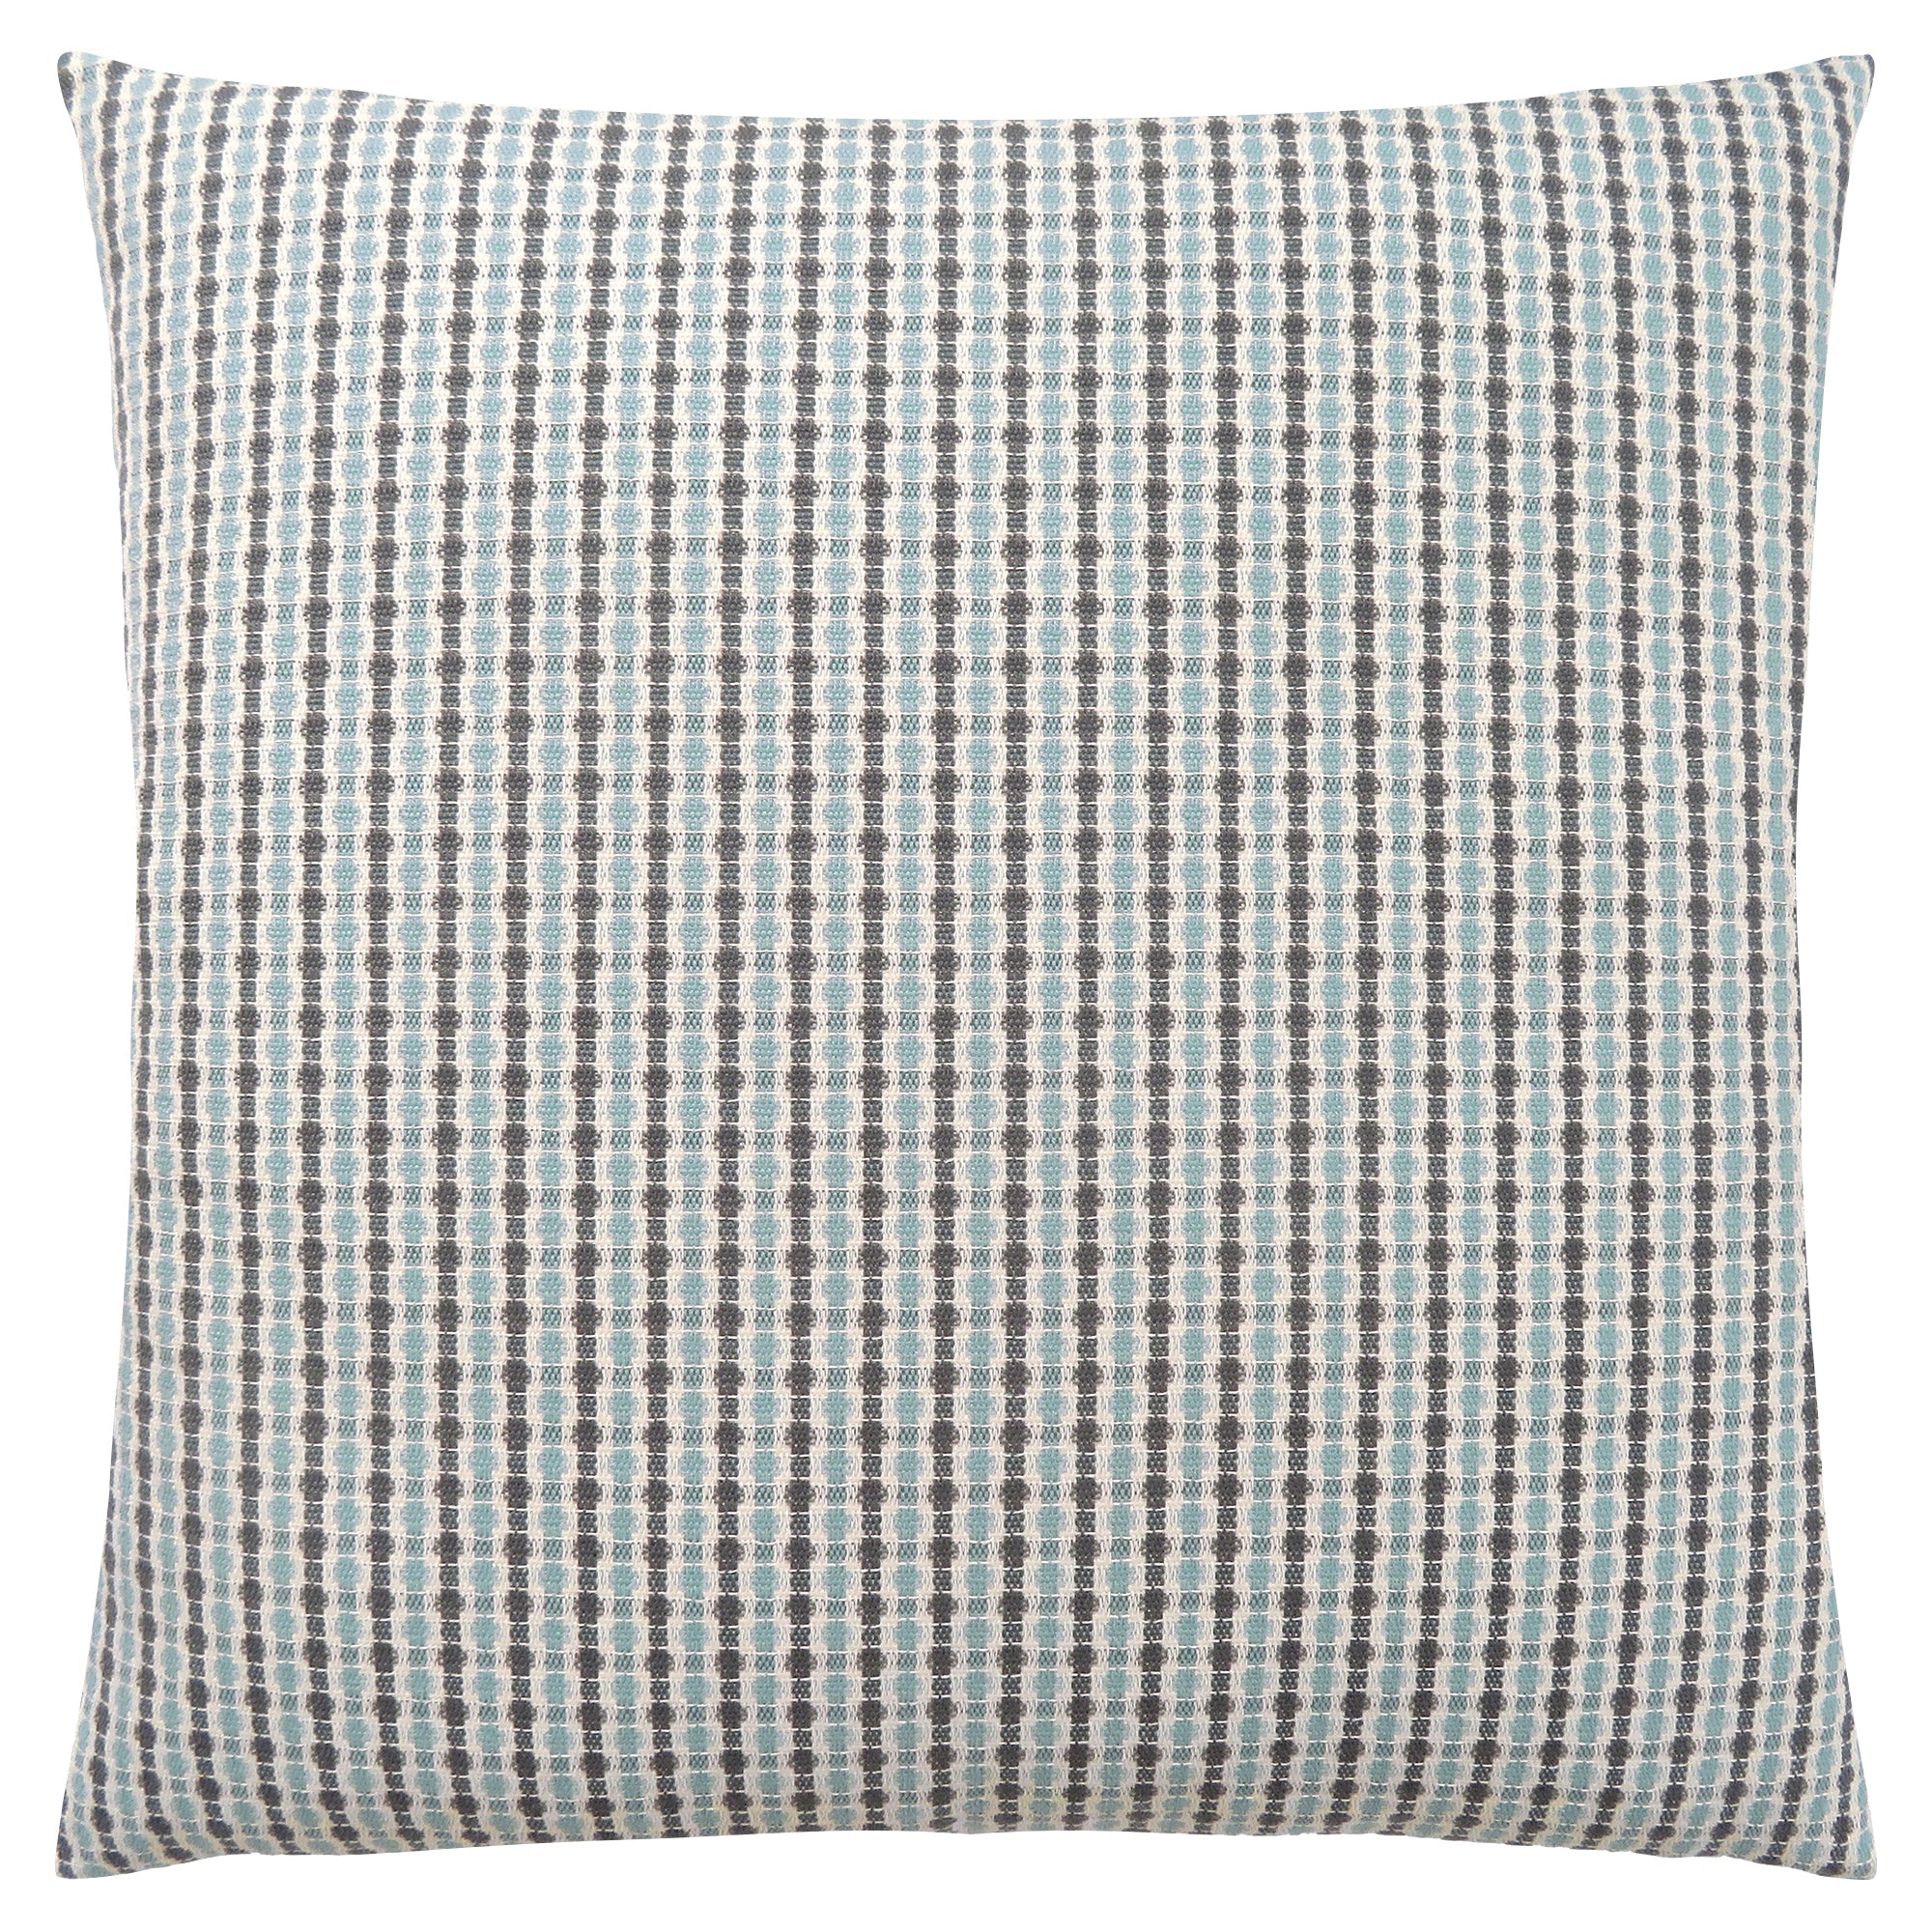 Pillow - 18X 18 / Light Blue / Grey Abstract Dot / 1Pc